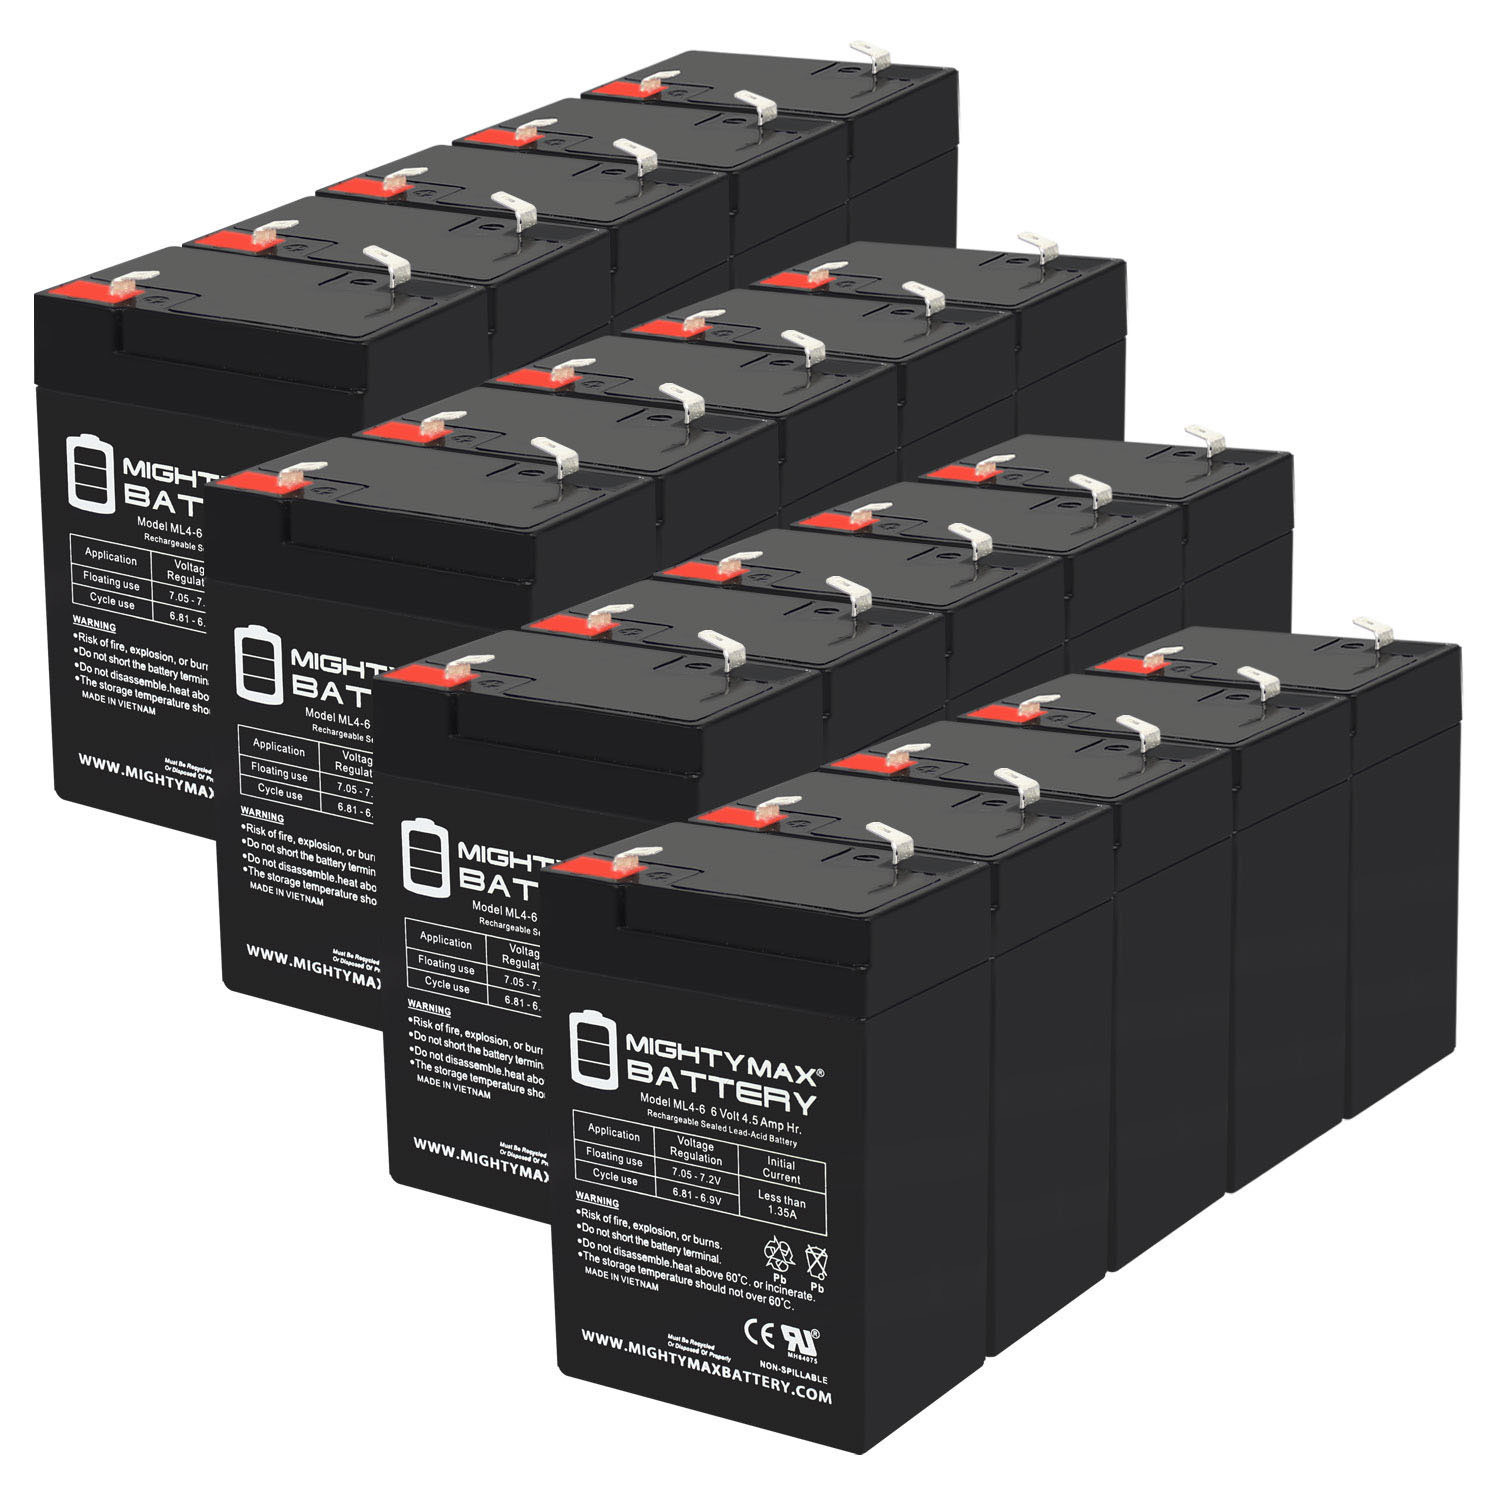 6V 4.5AH SLA Replacement Battery for Elan 1MB6V - 20 Pack